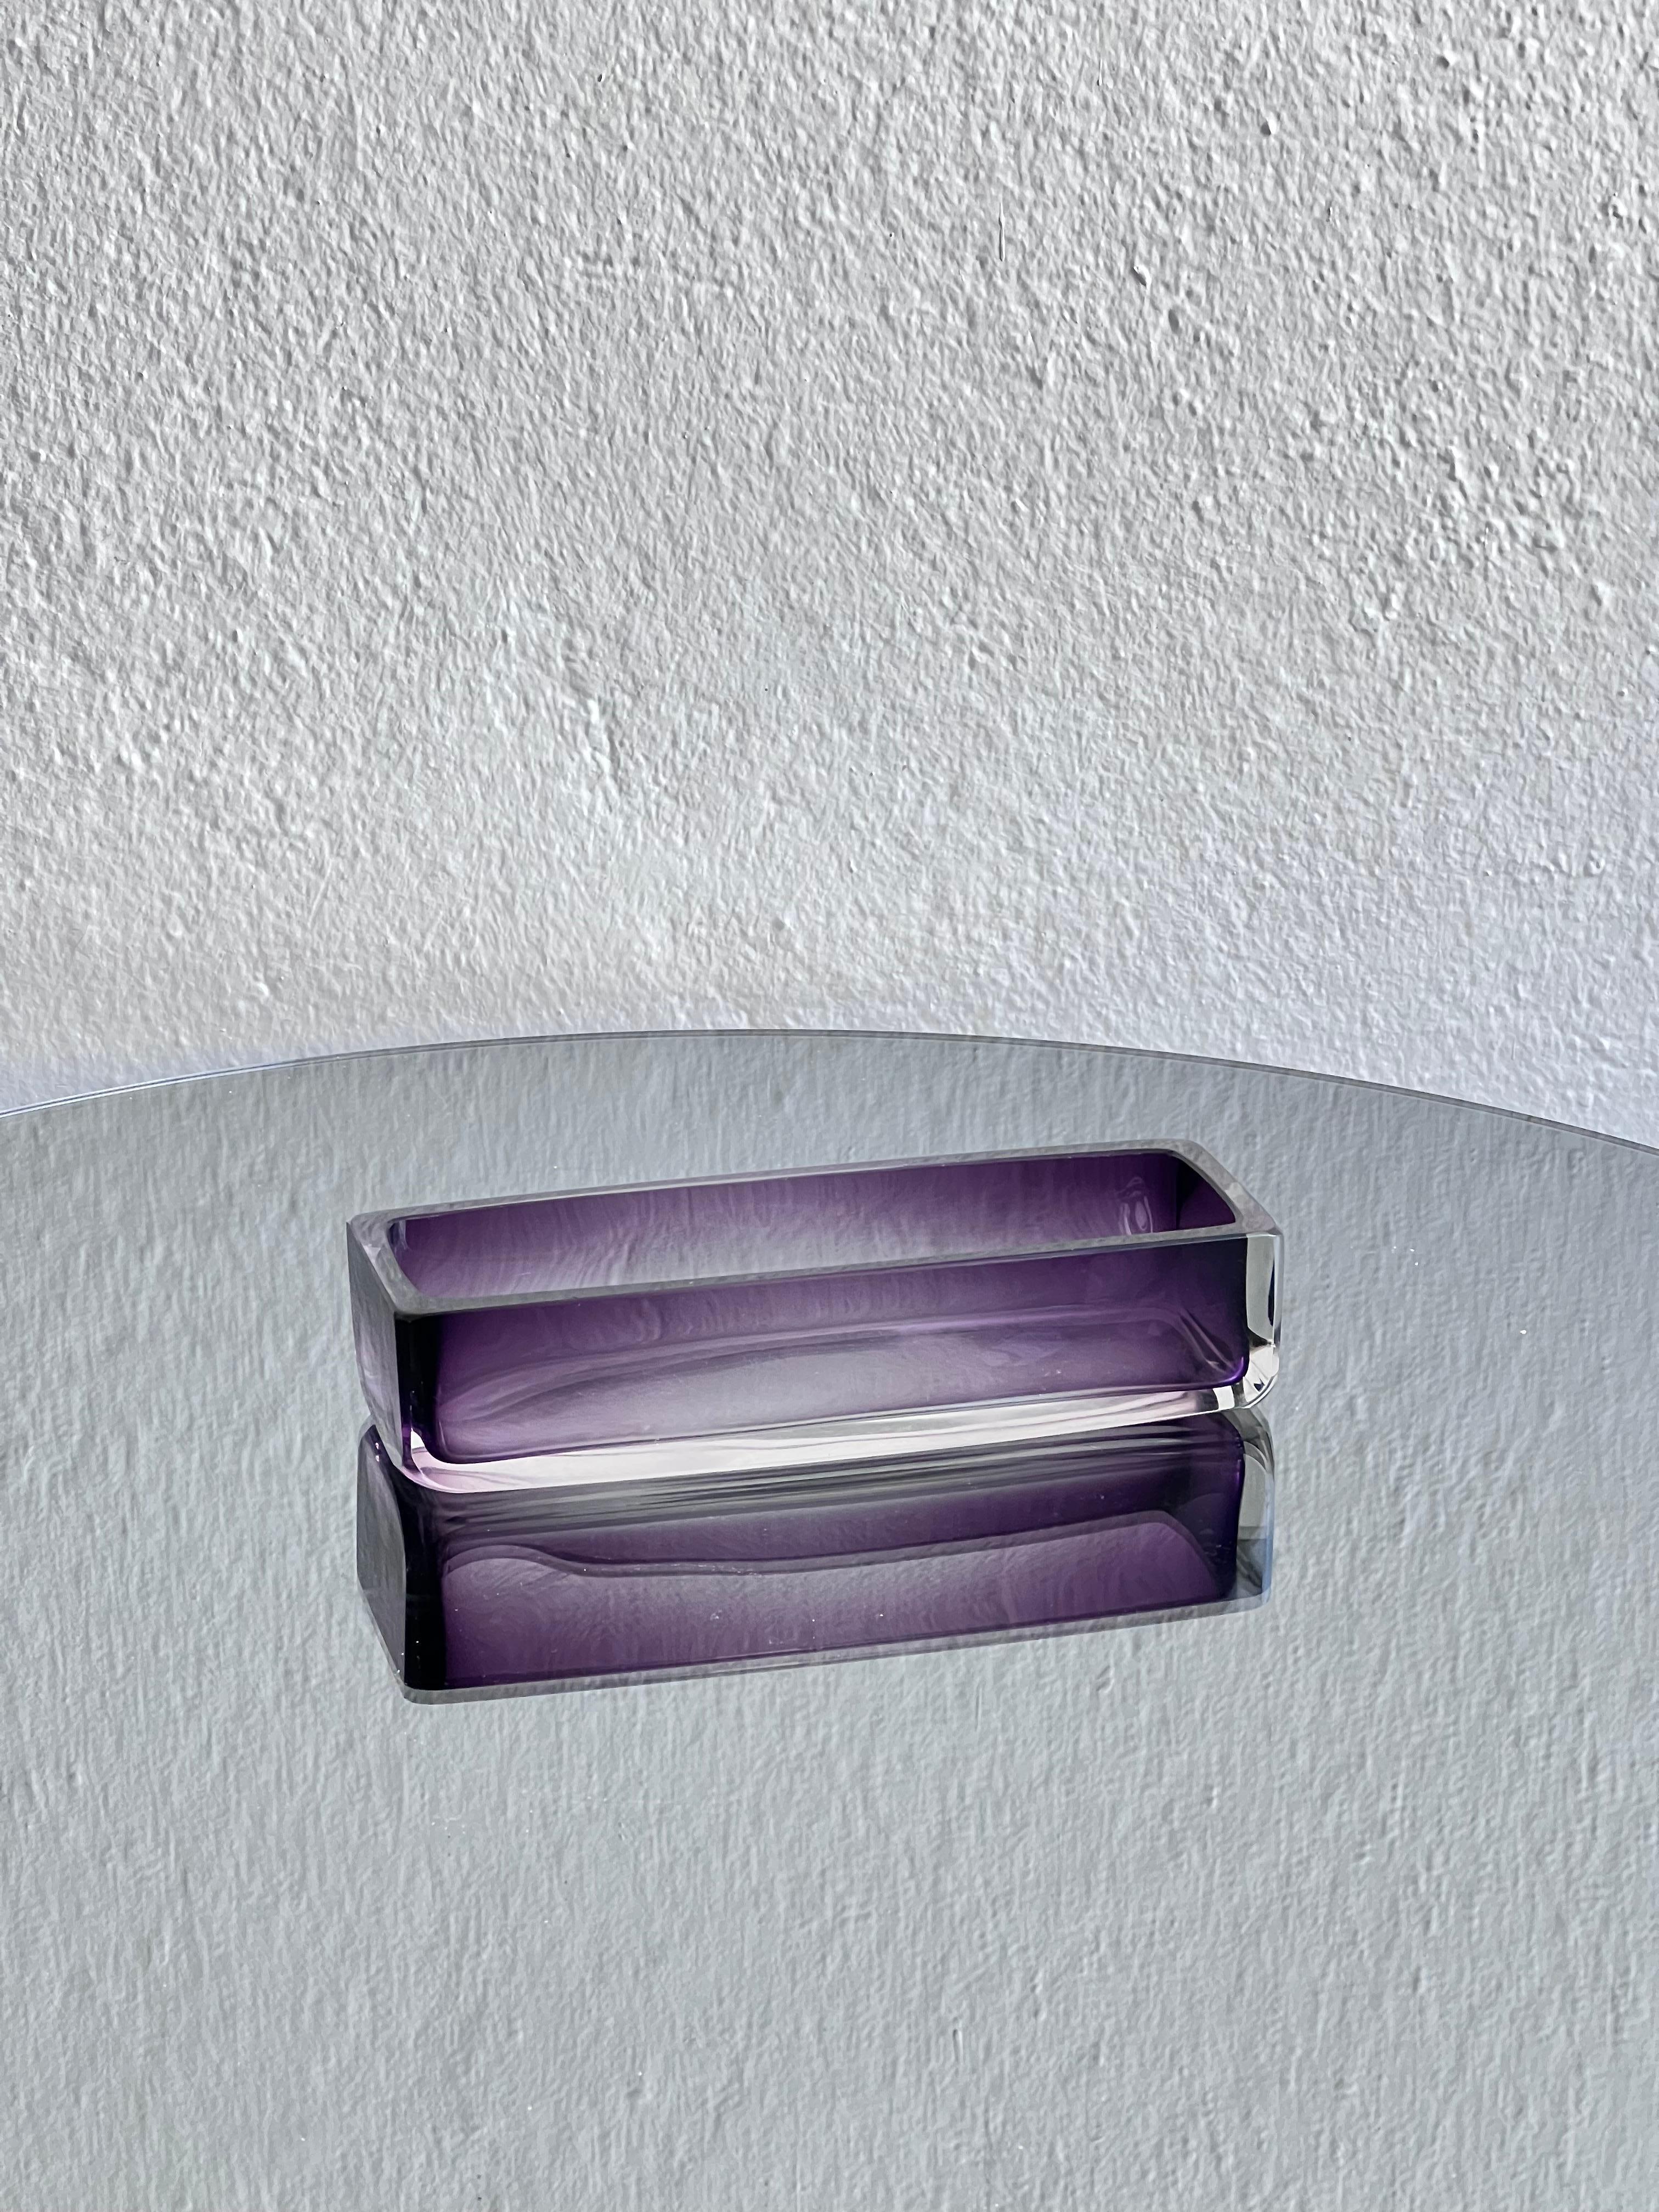 Modernes Sammlerstück aus Glas aus der Mitte des Jahrhunderts - violette Glasablage

Ein zeitloses und attraktives Diener-Tablett / Schale aus Glas. Violetter Farbton, der zur Klarheit hin abnimmt, sieht wie ein 